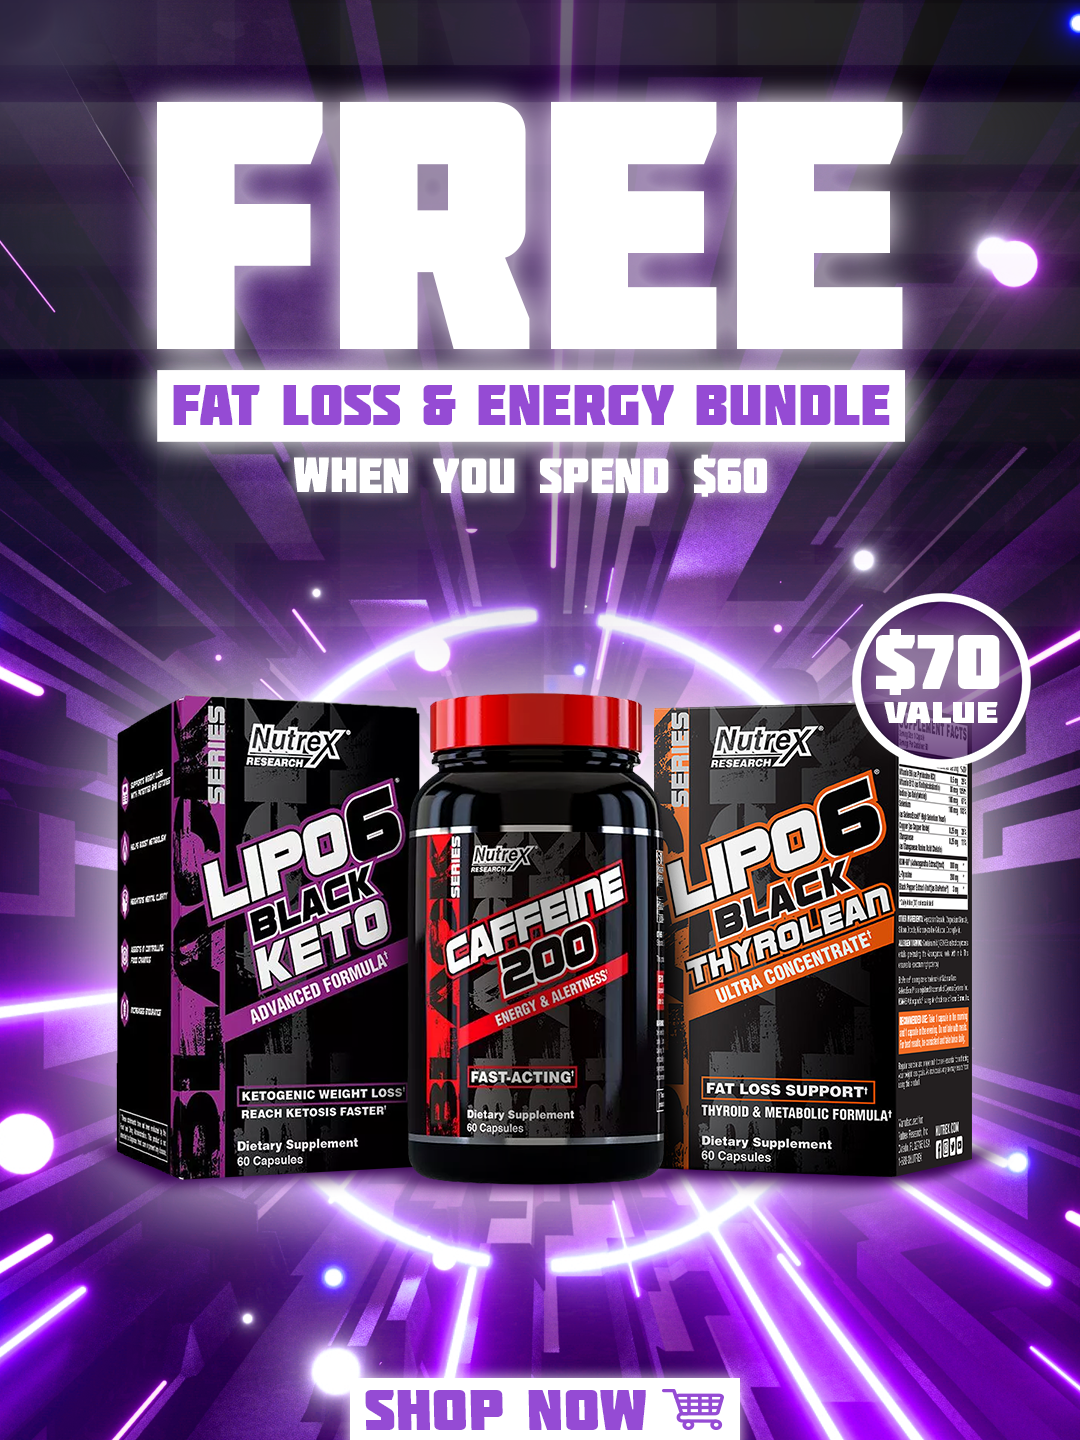 Free Fat loss & Energy Bundle